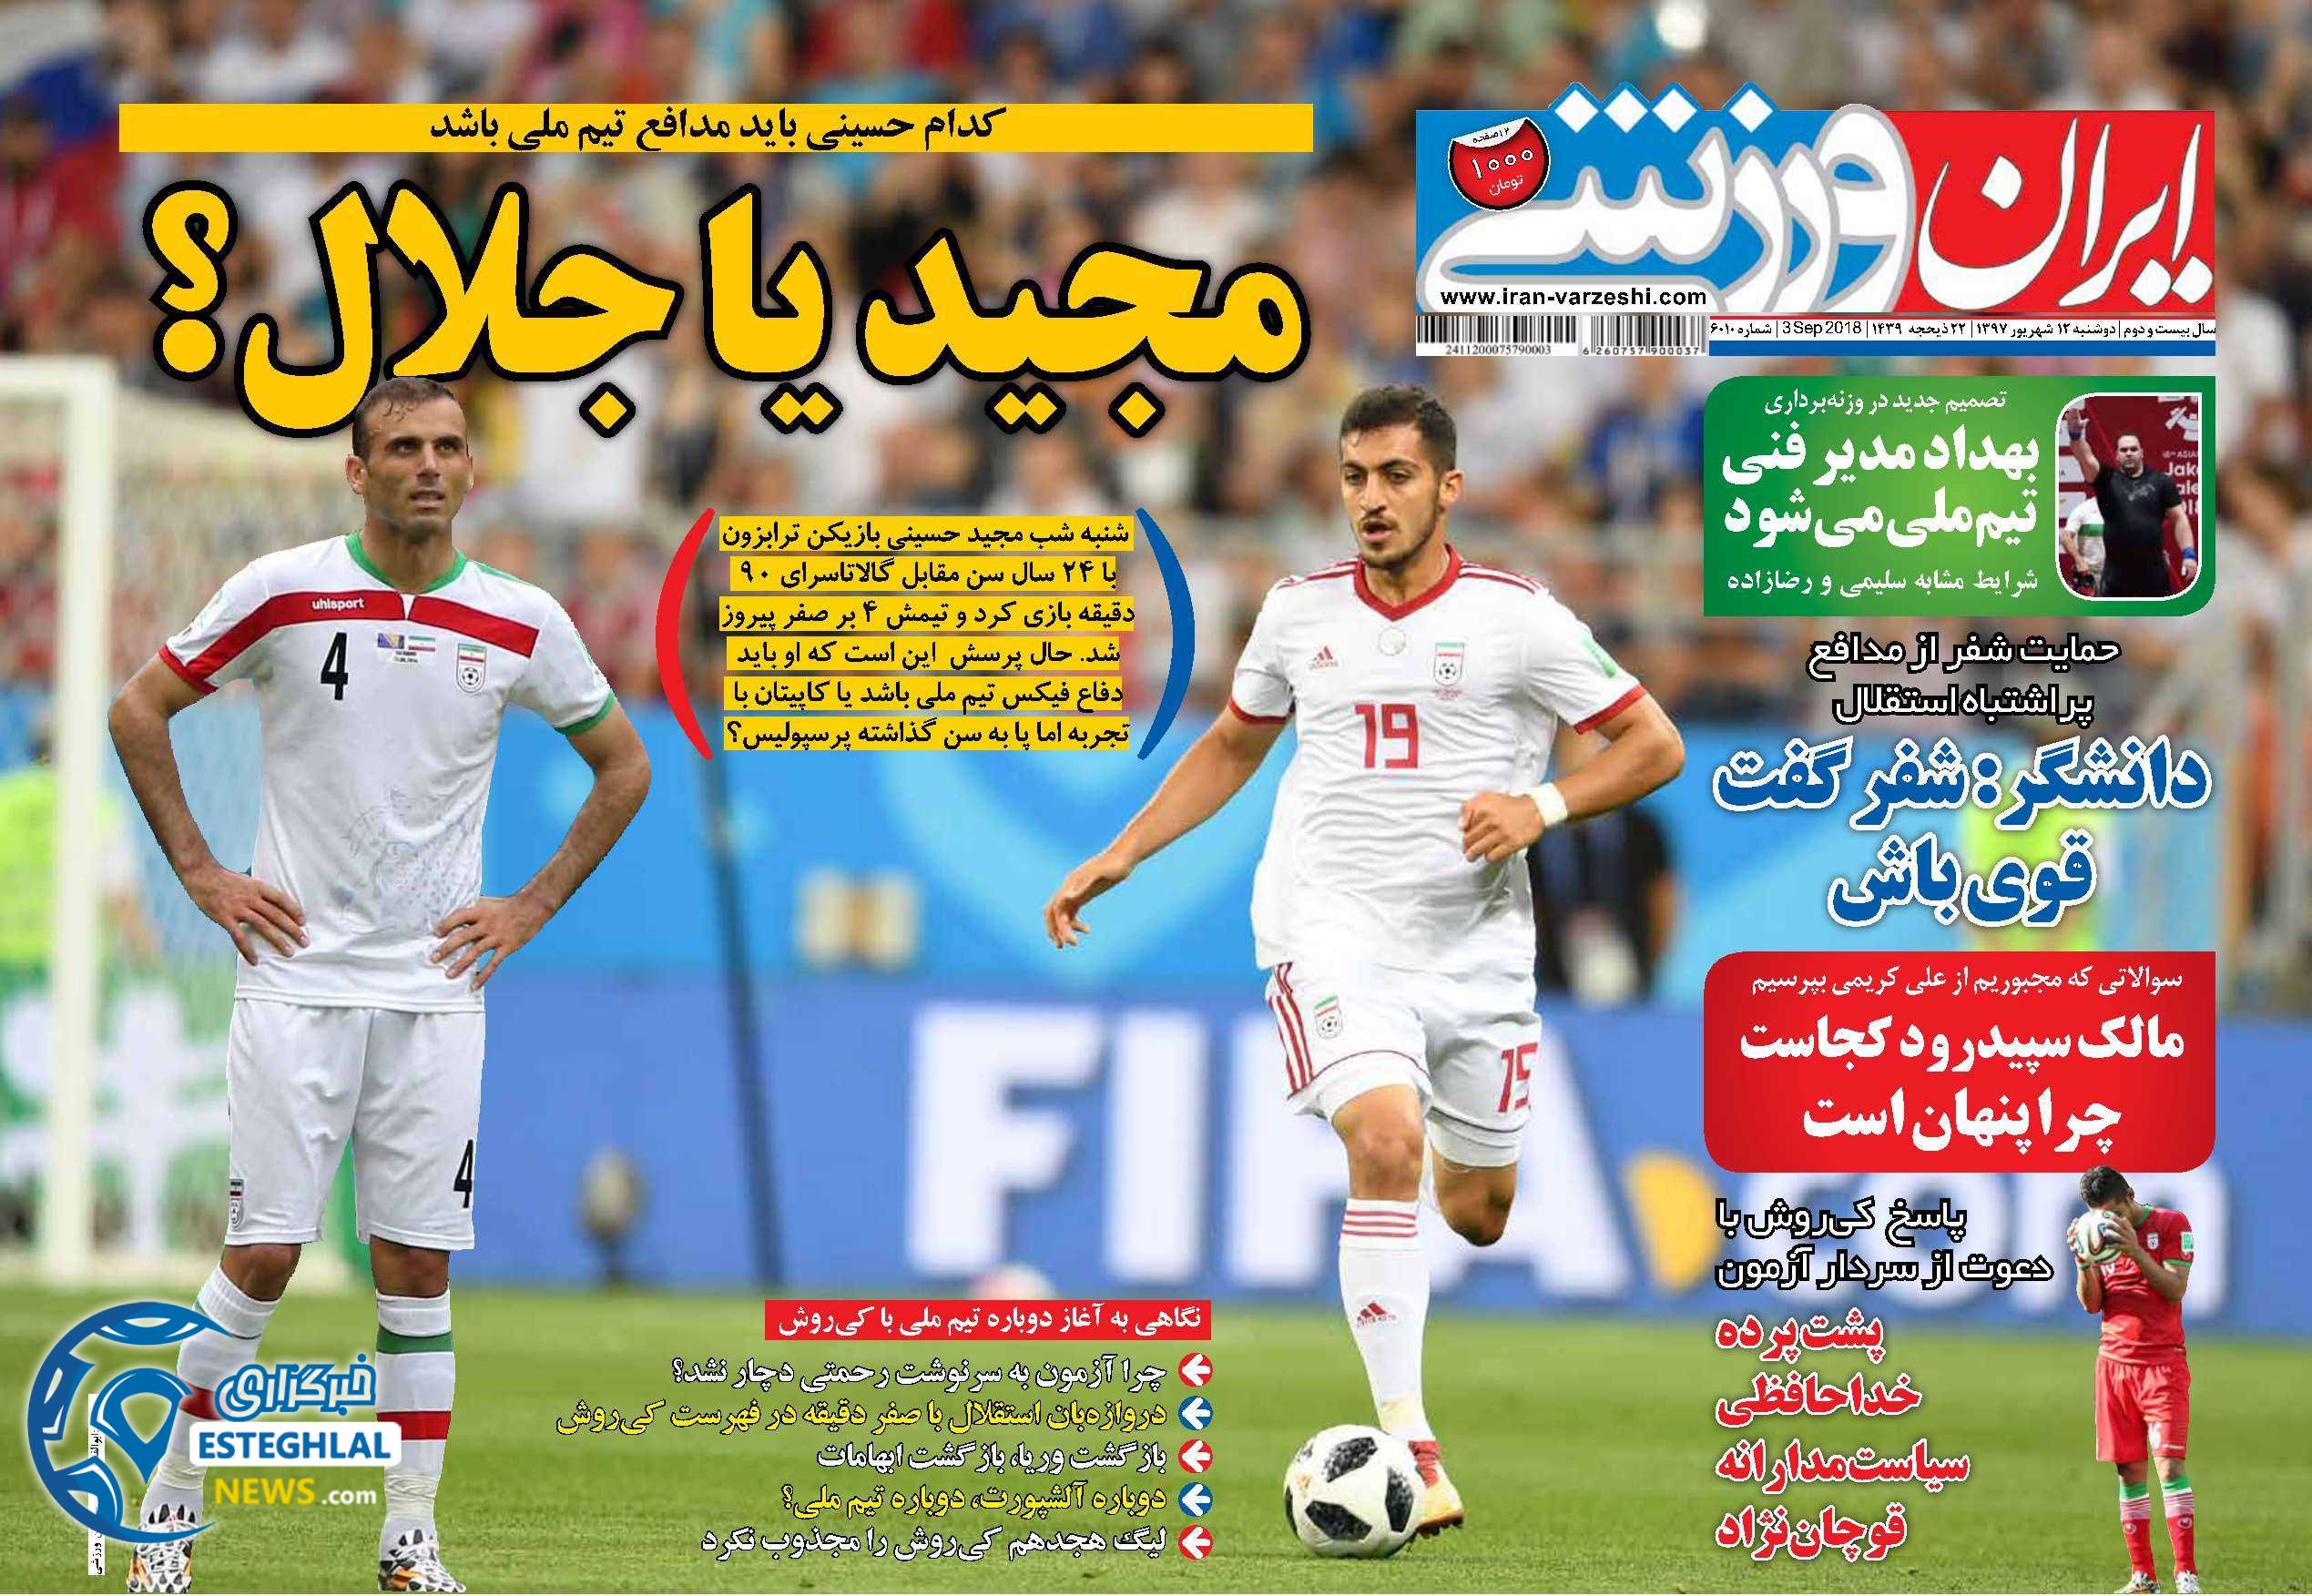 روزنامه ایران ورزشی دوشنبه 12 شهریور 